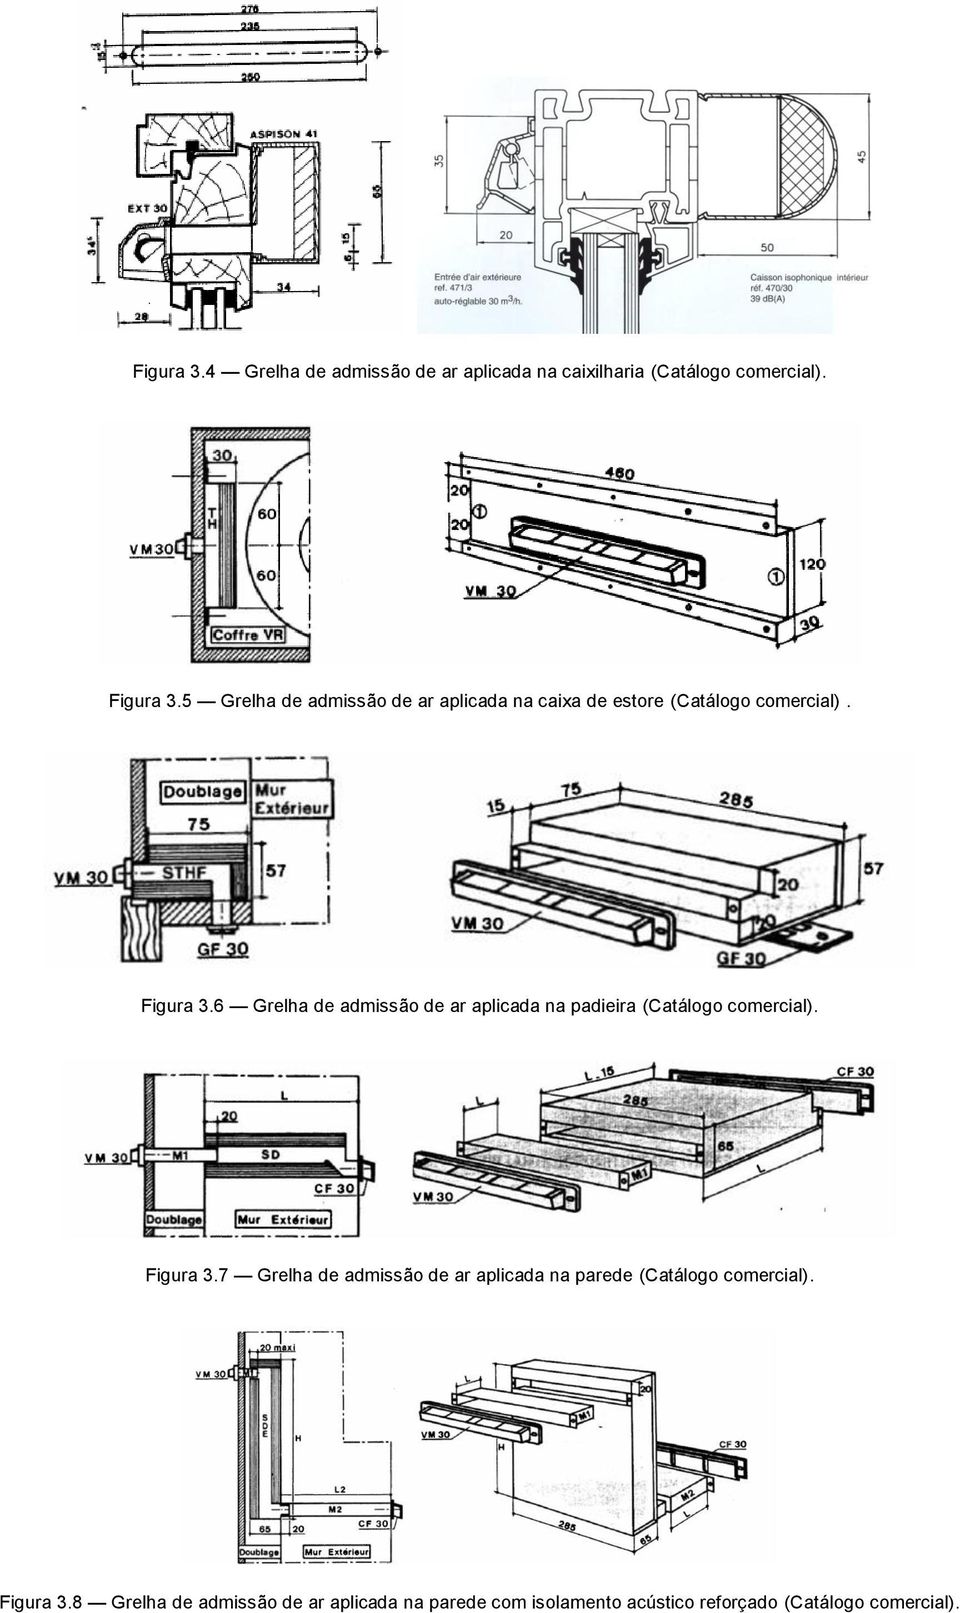 6 Grelha de admissão de ar aplicada na padieira (Catálogo comercial). Figura 3.